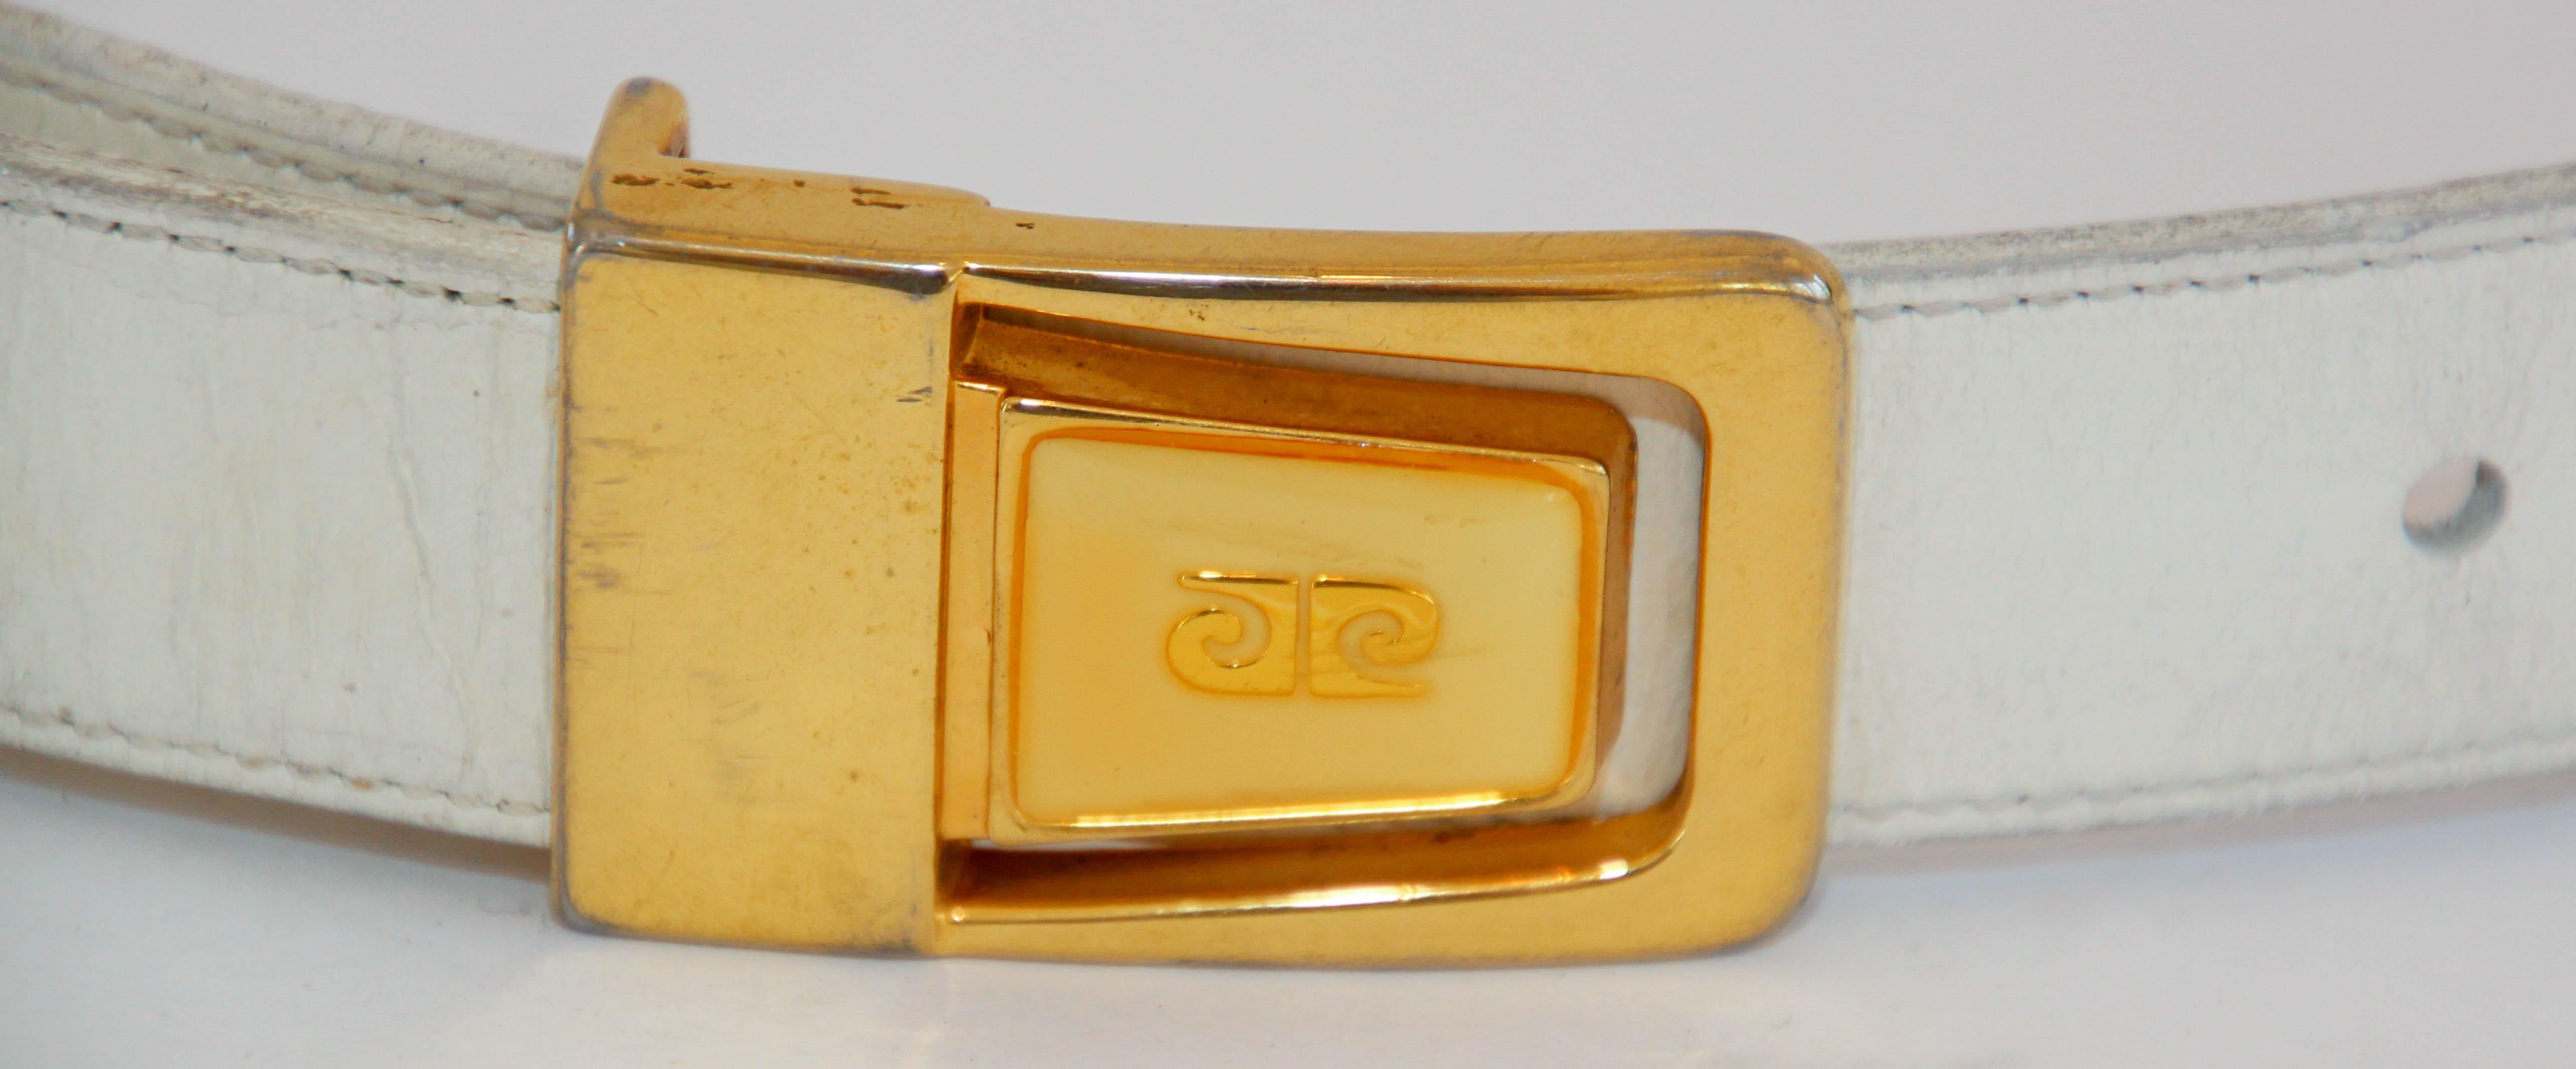 1960's Pierre Cardin Vintage Weißes Leder Taillengürtel.
Gürtel aus Rindsleder mit Logoschnalle aus Messing.
Schmaler weißer Ledergürtel aus der Mitte des Jahrhunderts aus Anilin-Rindsleder, gefüttert mit Anilin-Rindsleder.
Goldfarbene Dornschließe